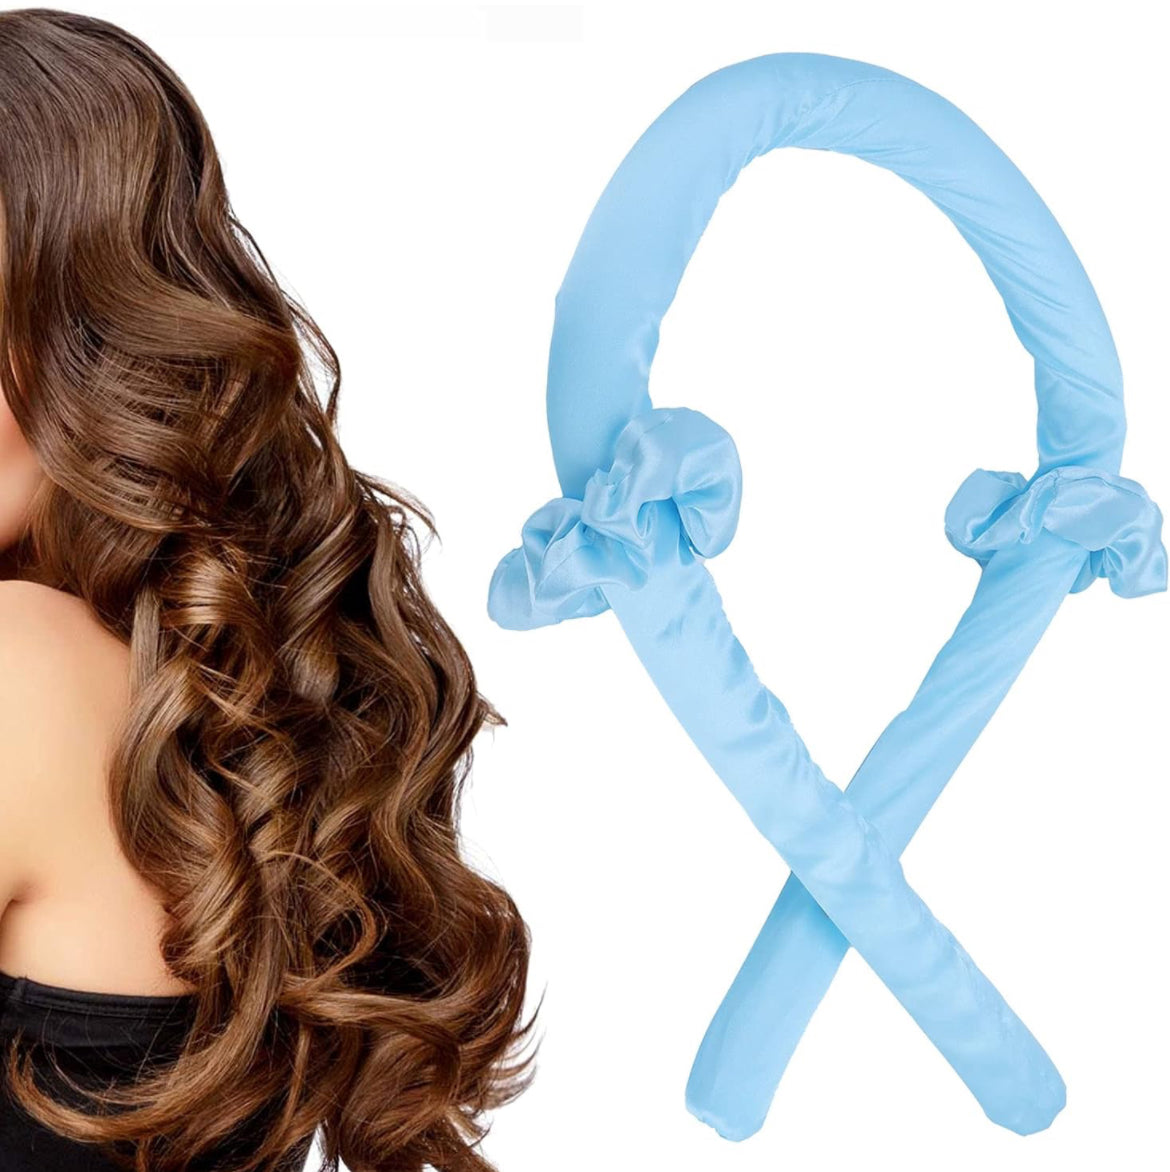 Rizador de pelo, práctica diadema de pelo rizado Método de rizado suave para el hogar (Color: azul)